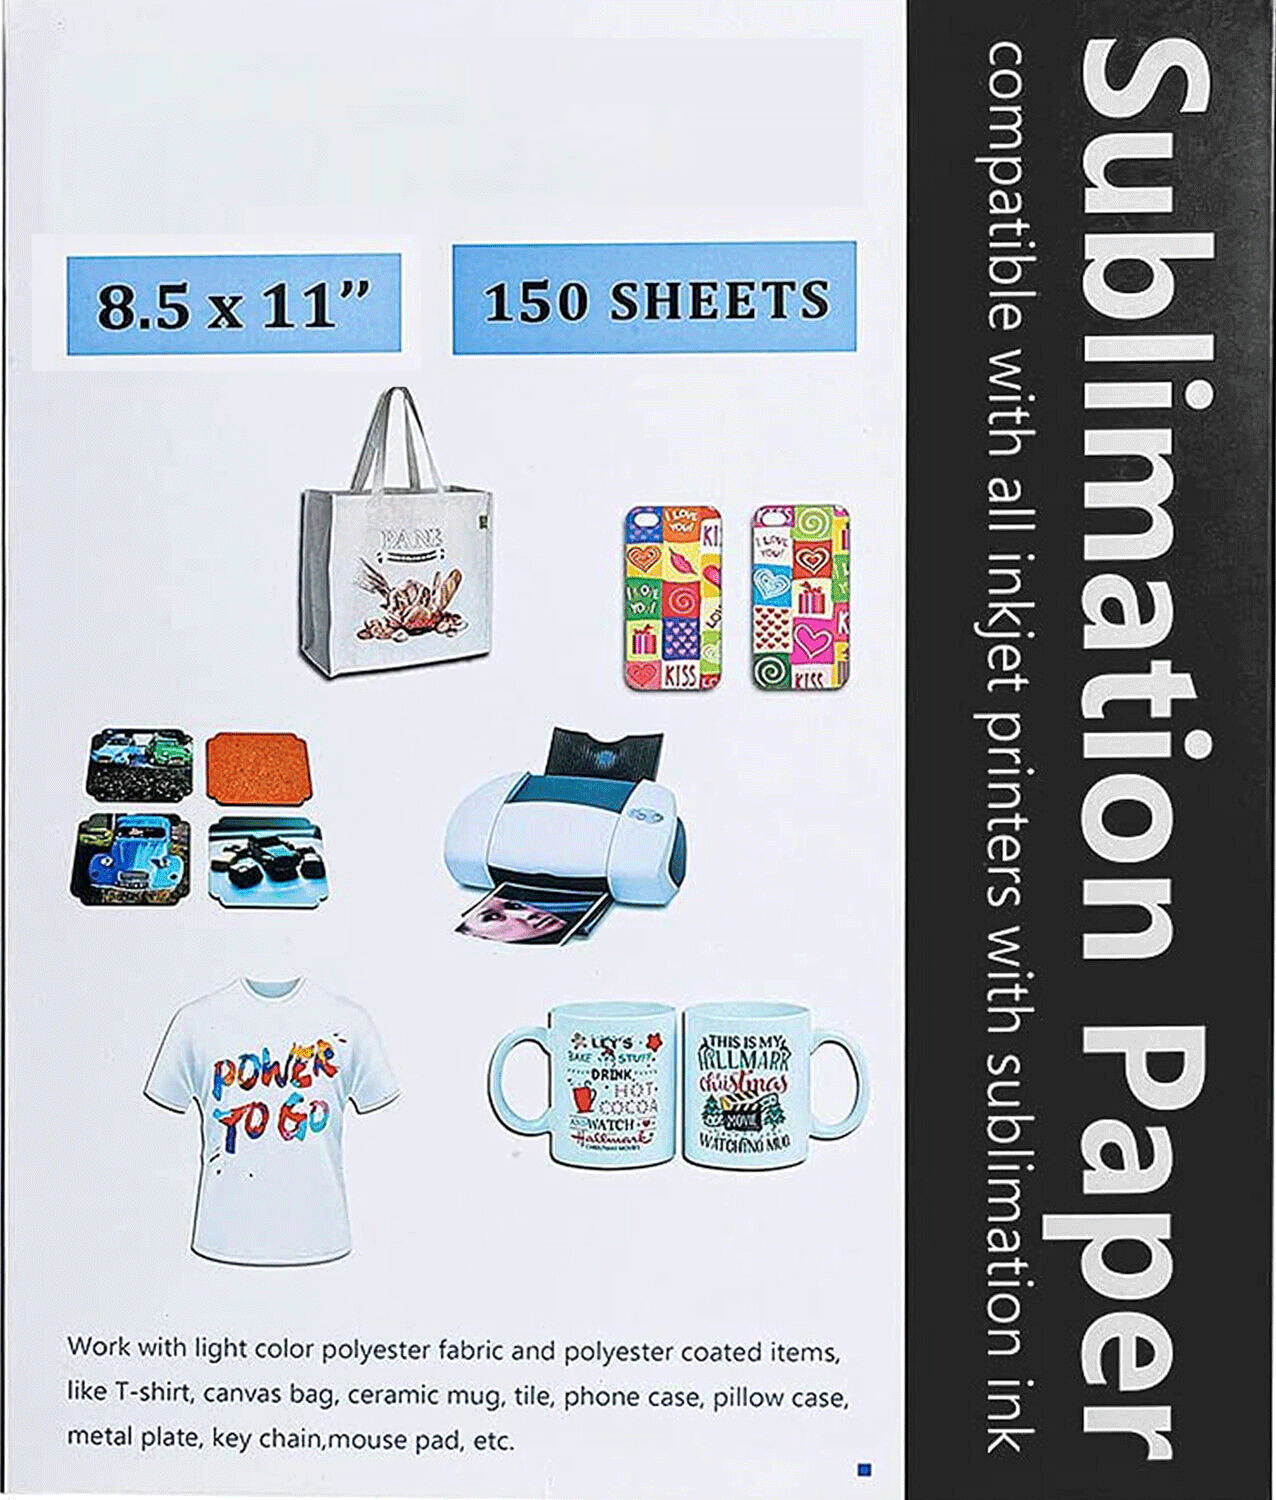 HTVRONT Sublimation Paper Sublimation Vinyl Set - 8.5 x 11 inches 150  Sheets Sublimation Paper Plus 20 Pack 12 X 12 Matte Sublimation Vinyl for